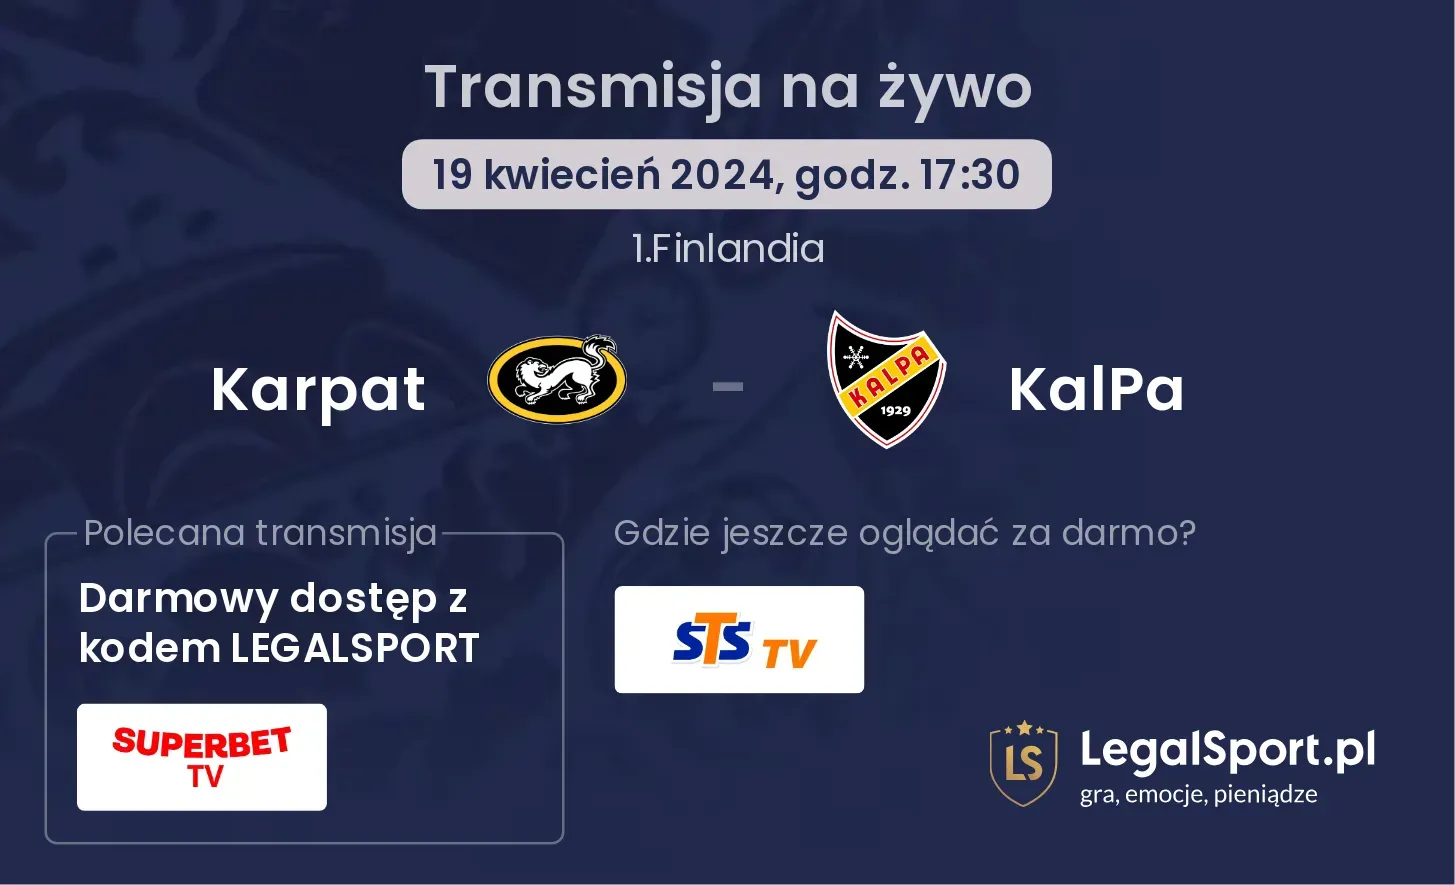 Karpat - KalPa transmisja na żywo